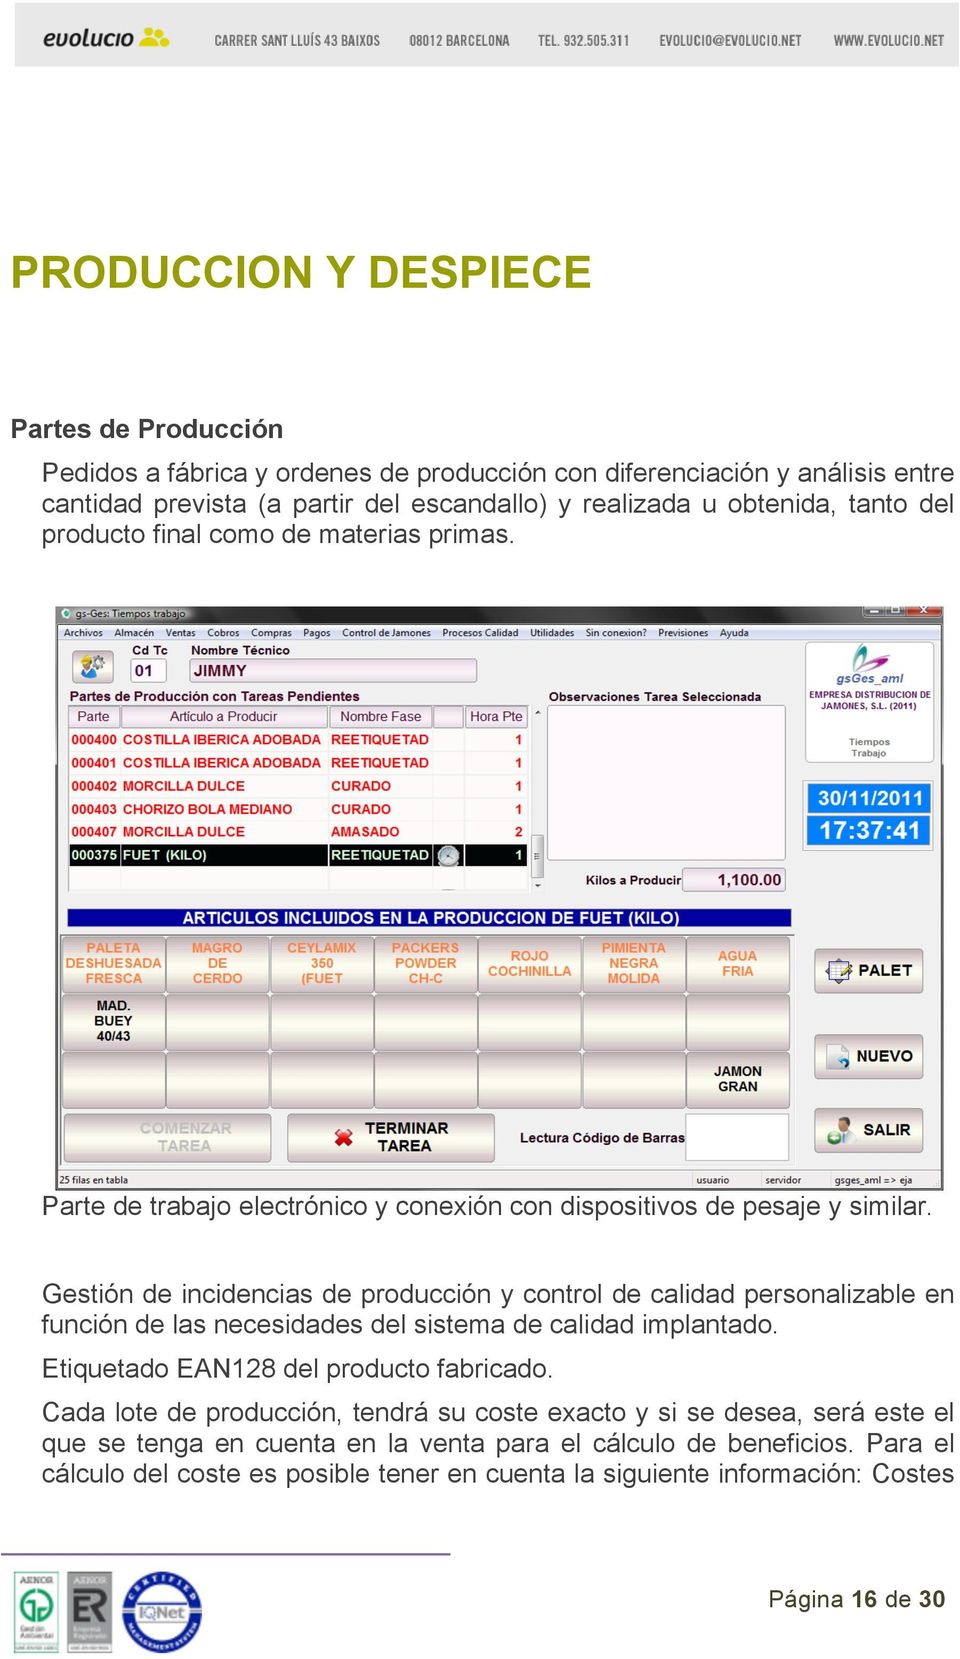 Gestión de incidencias de producción y control de calidad personalizable en función de las necesidades del sistema de calidad implantado. Etiquetado EAN128 del producto fabricado.